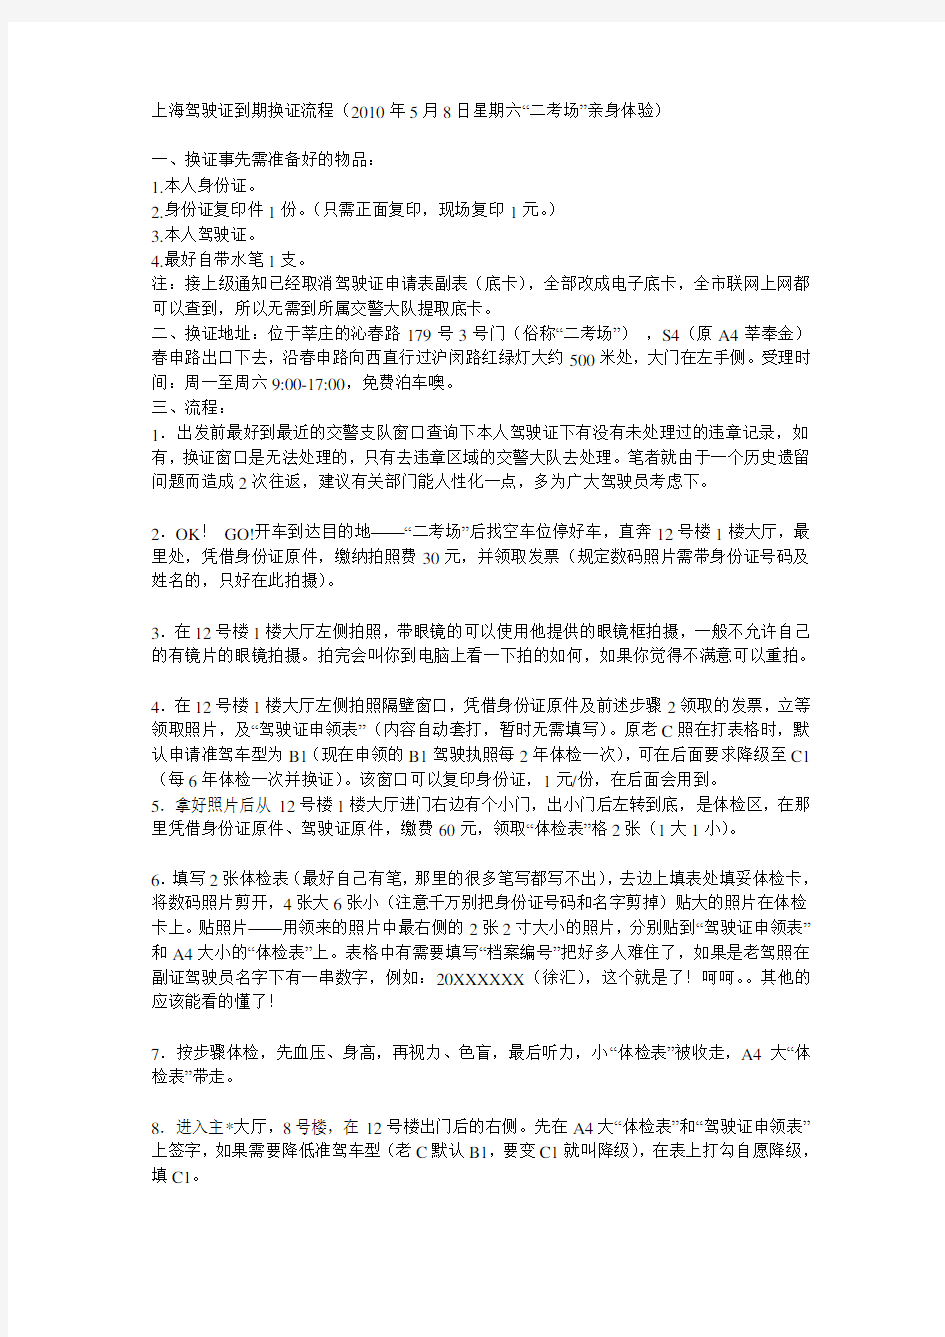 上海驾驶证换证步骤